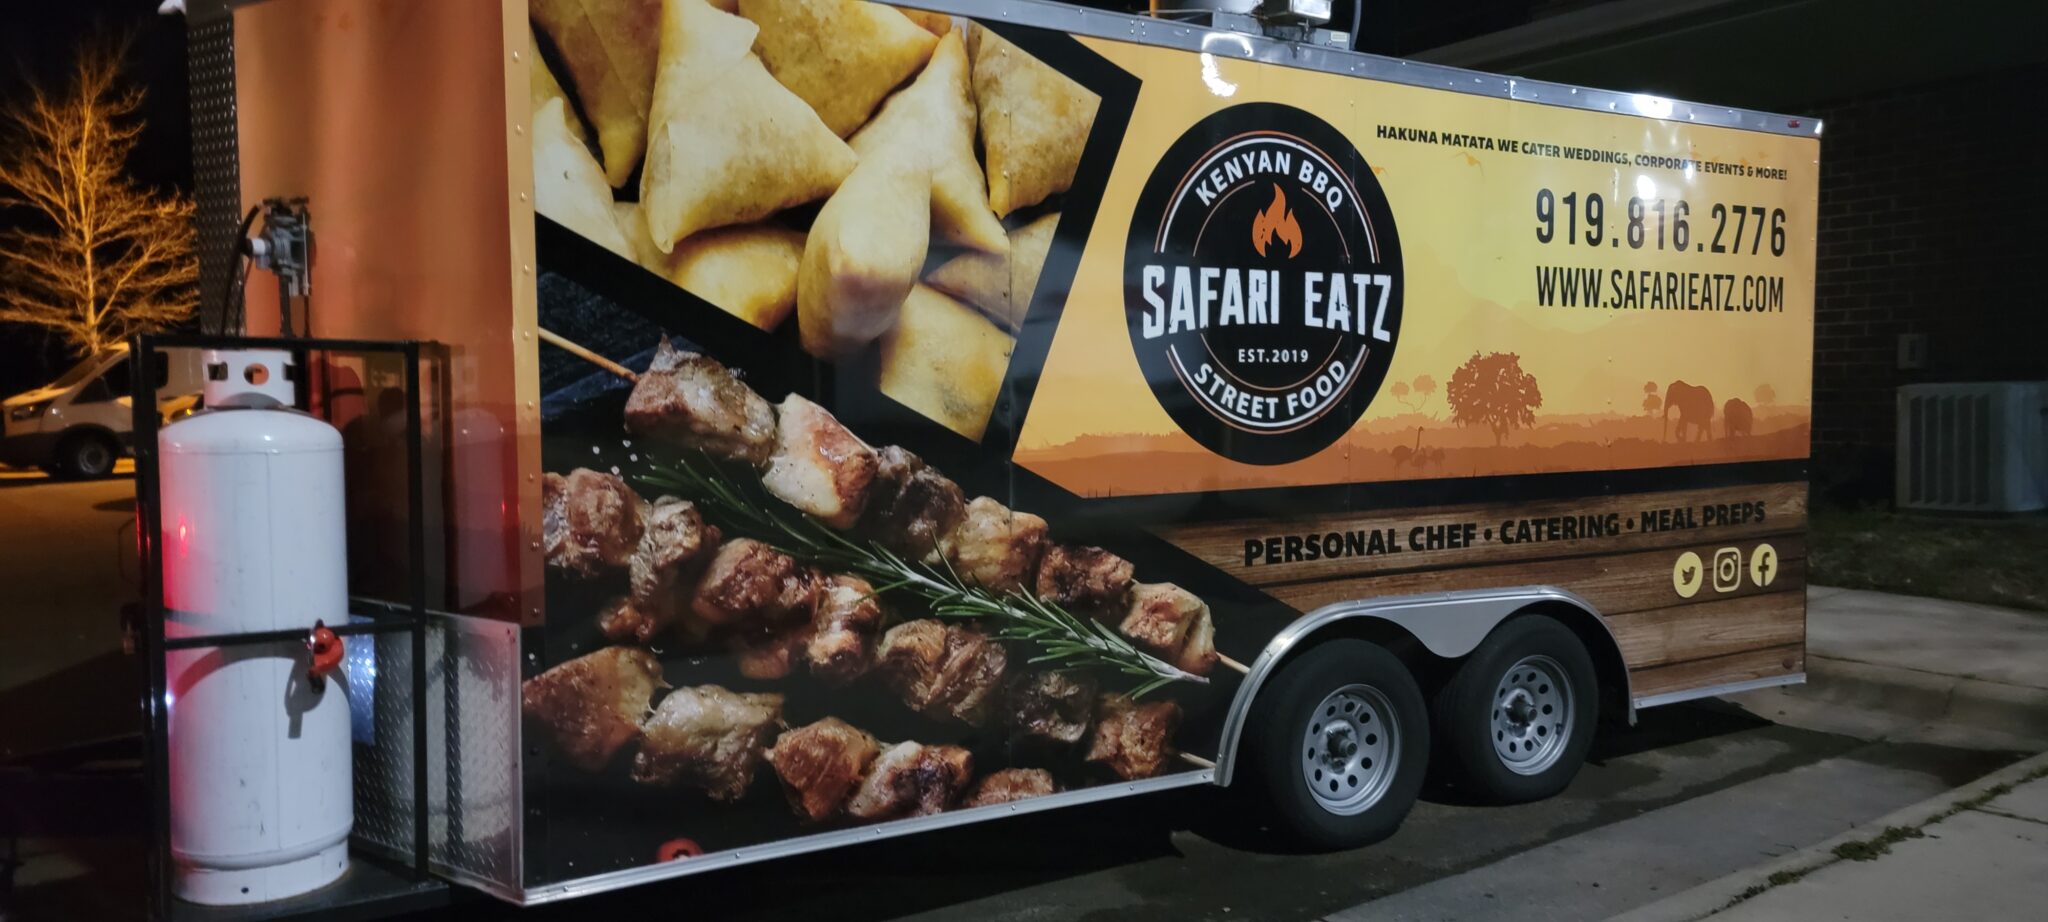 safari eatz food truck